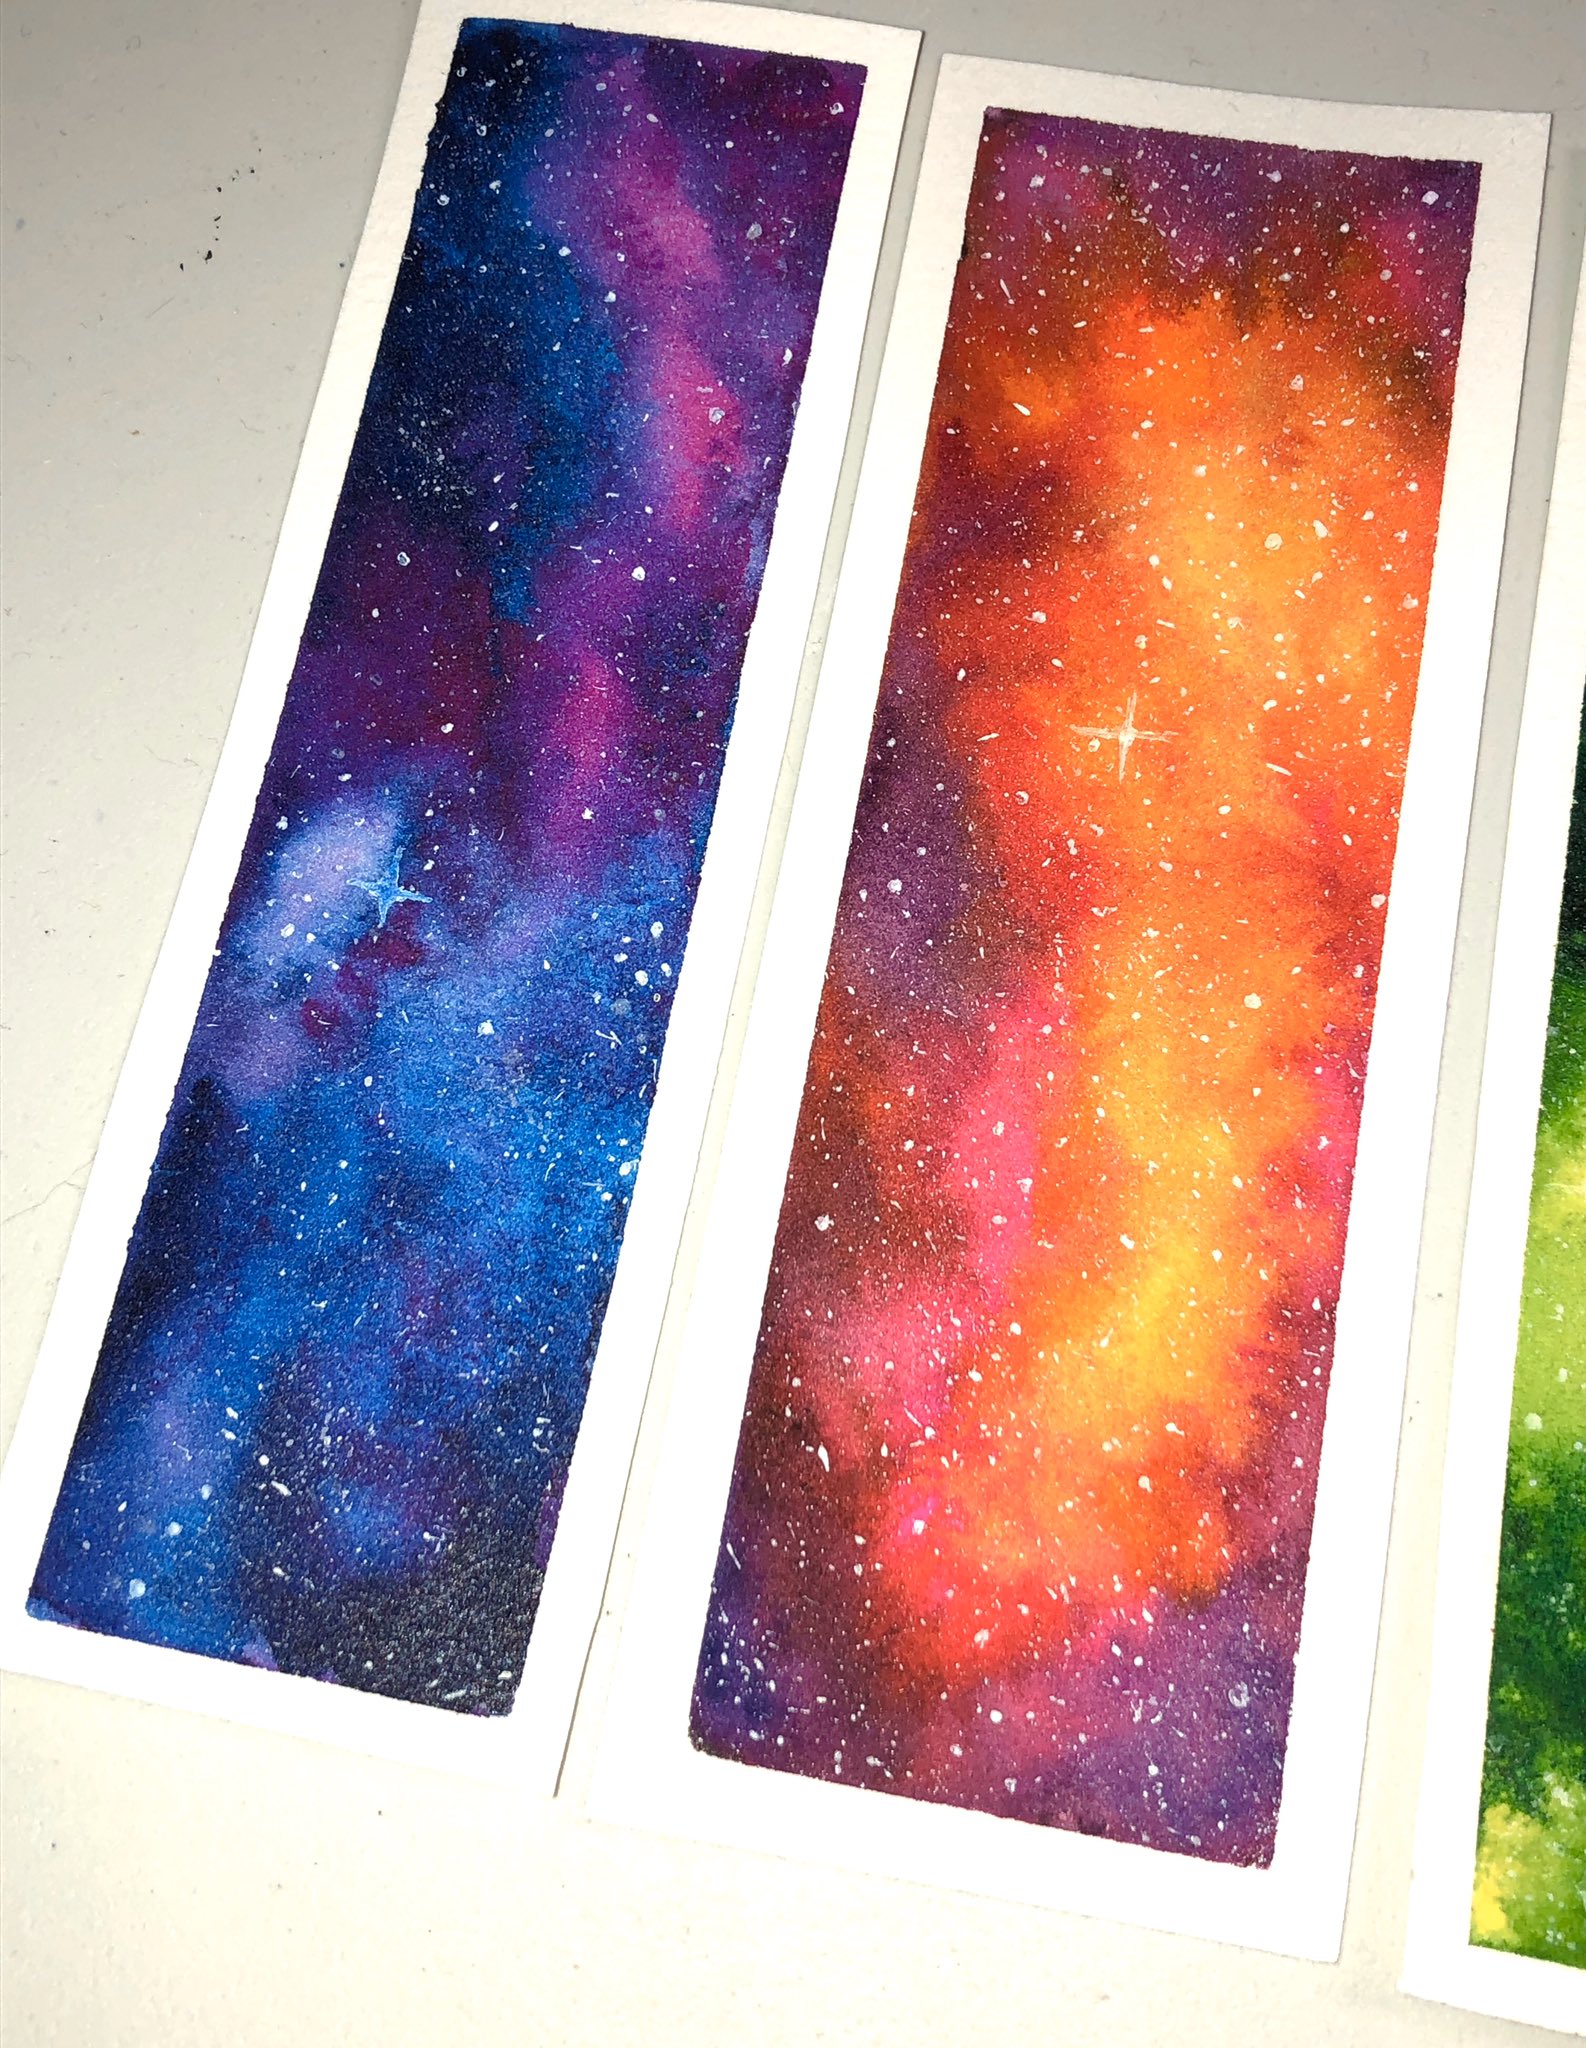 Hãy khám phá vẻ đẹp vô tận của vũ trụ qua tranh sáng tạo Watercolor Galaxy. Dưới giá trị nghệ thuật, mỗi chi tiết mảng màu có khả năng tái hiện các hành tinh, sao băng sáng rực rỡ, hoặc những trận đại bàng trong vũ trụ.